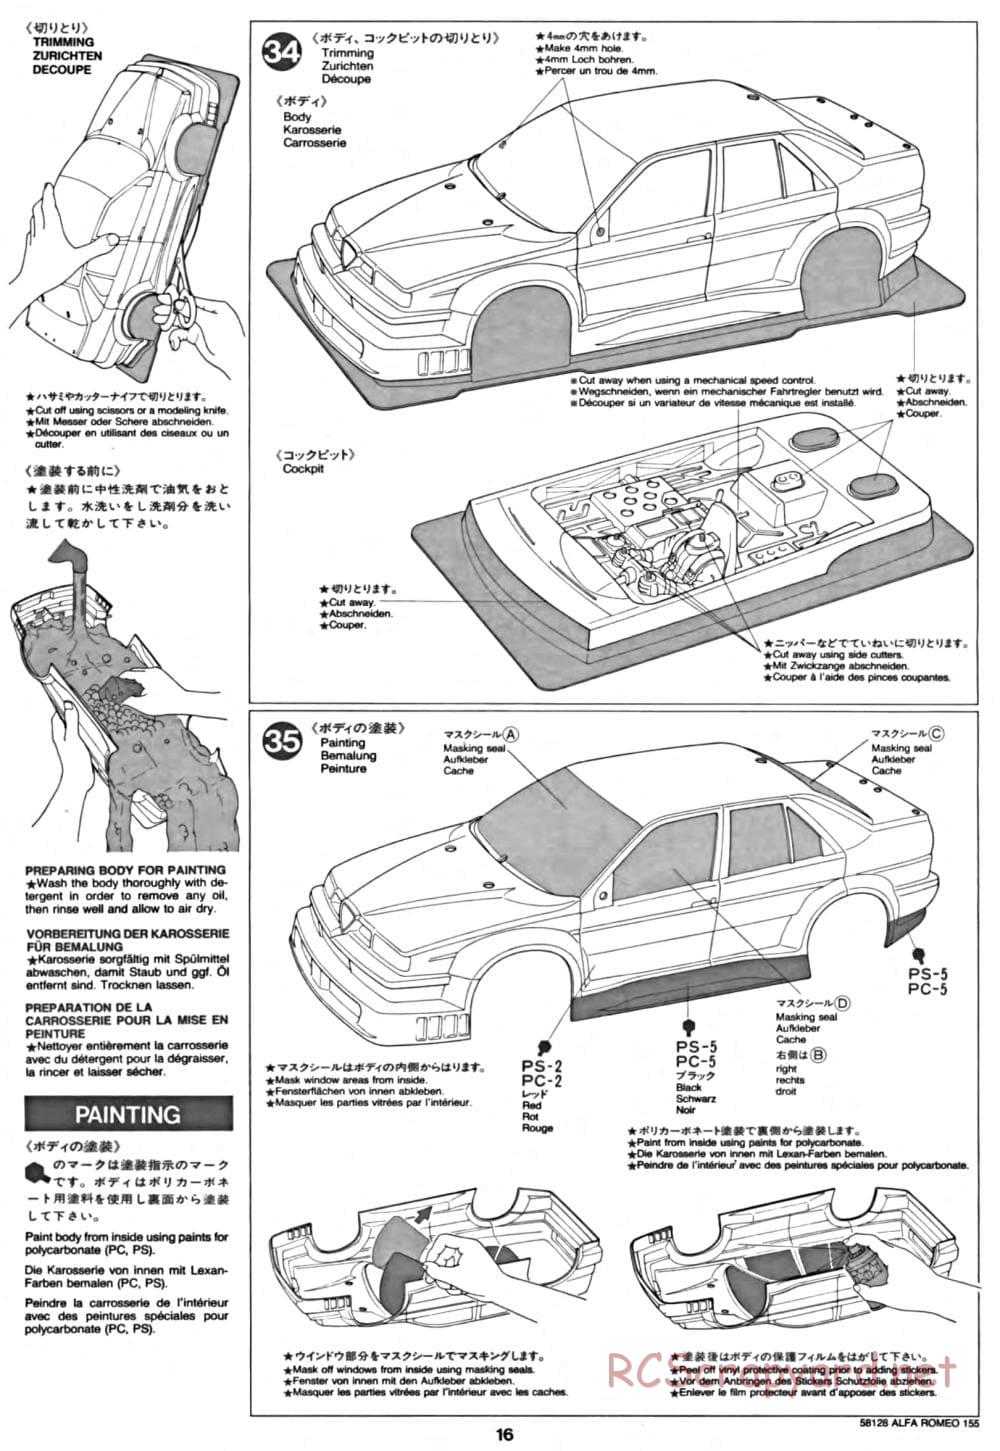 Tamiya - Alfa Romeo 155 V6 TI - TA-02 Chassis - Manual - Page 16